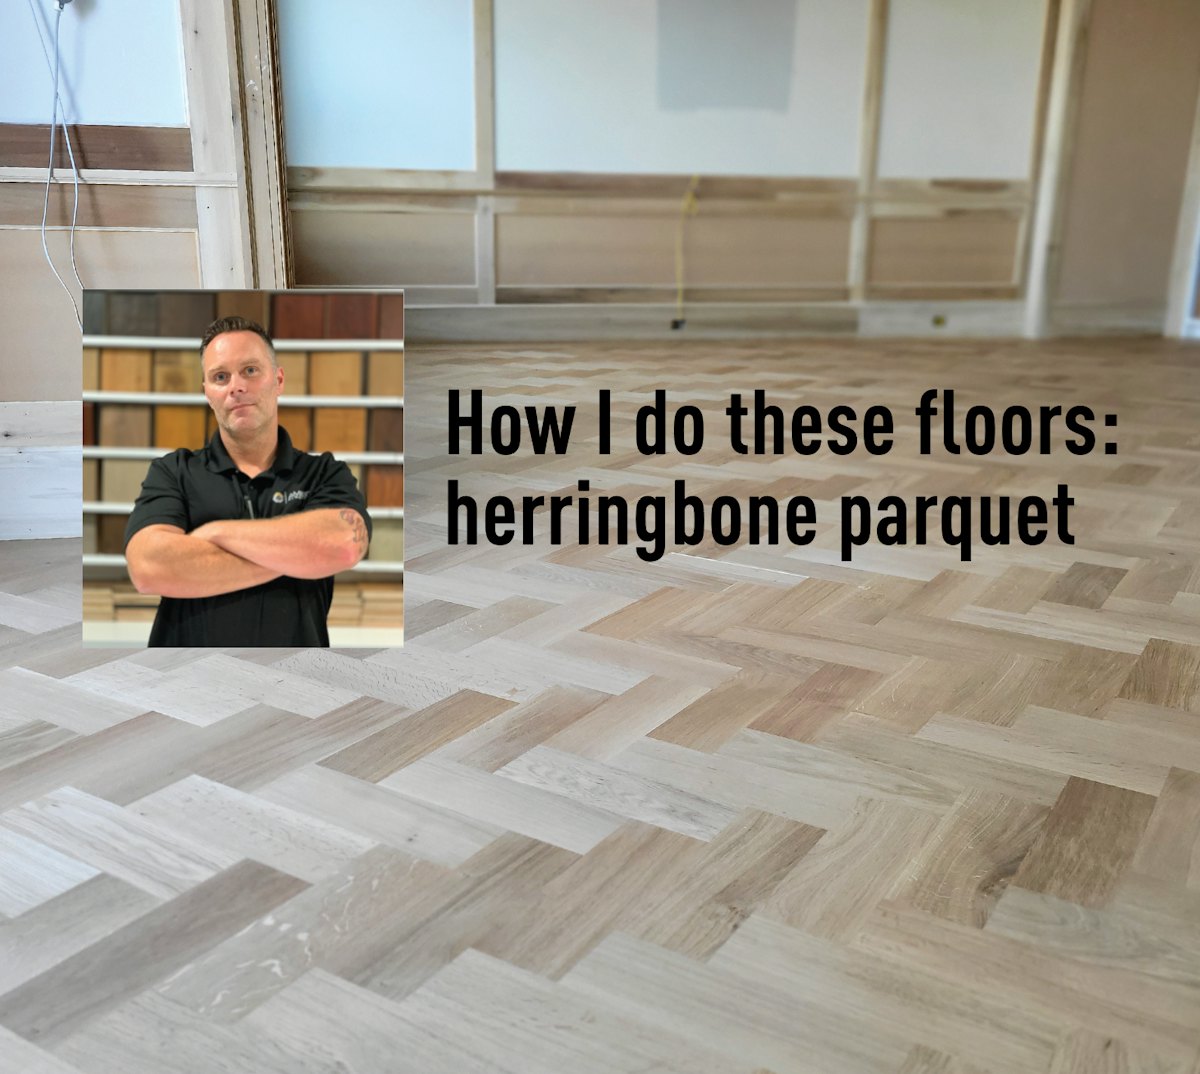 Herringbone floor